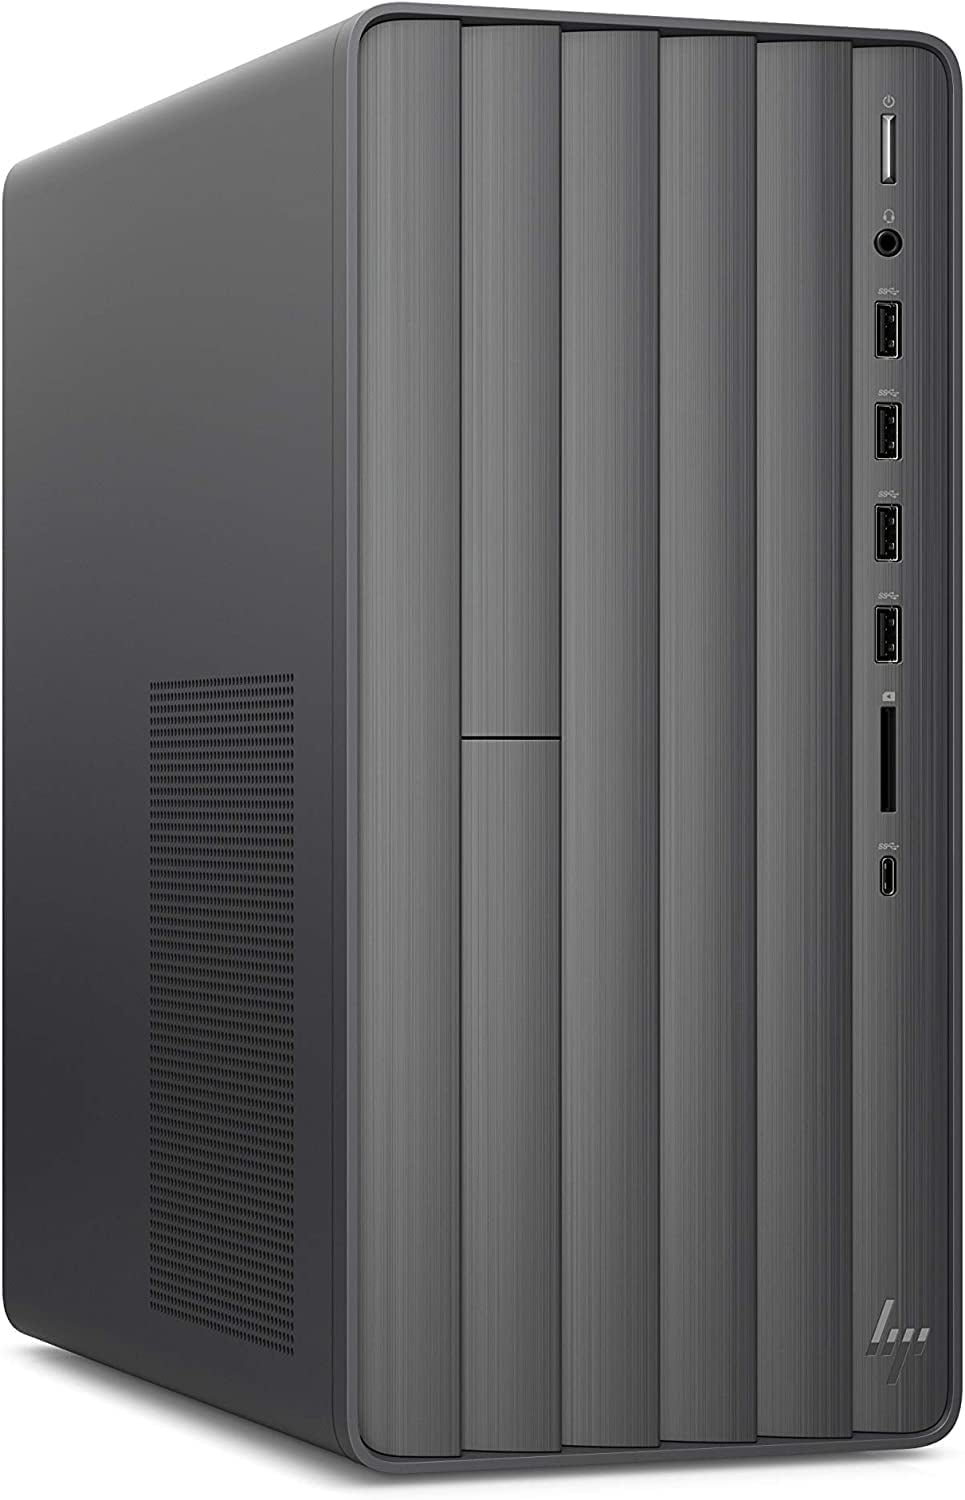 HP Envy Desktop Computer, 12th Gen Intel Core i7-12700, 32GB DDR4